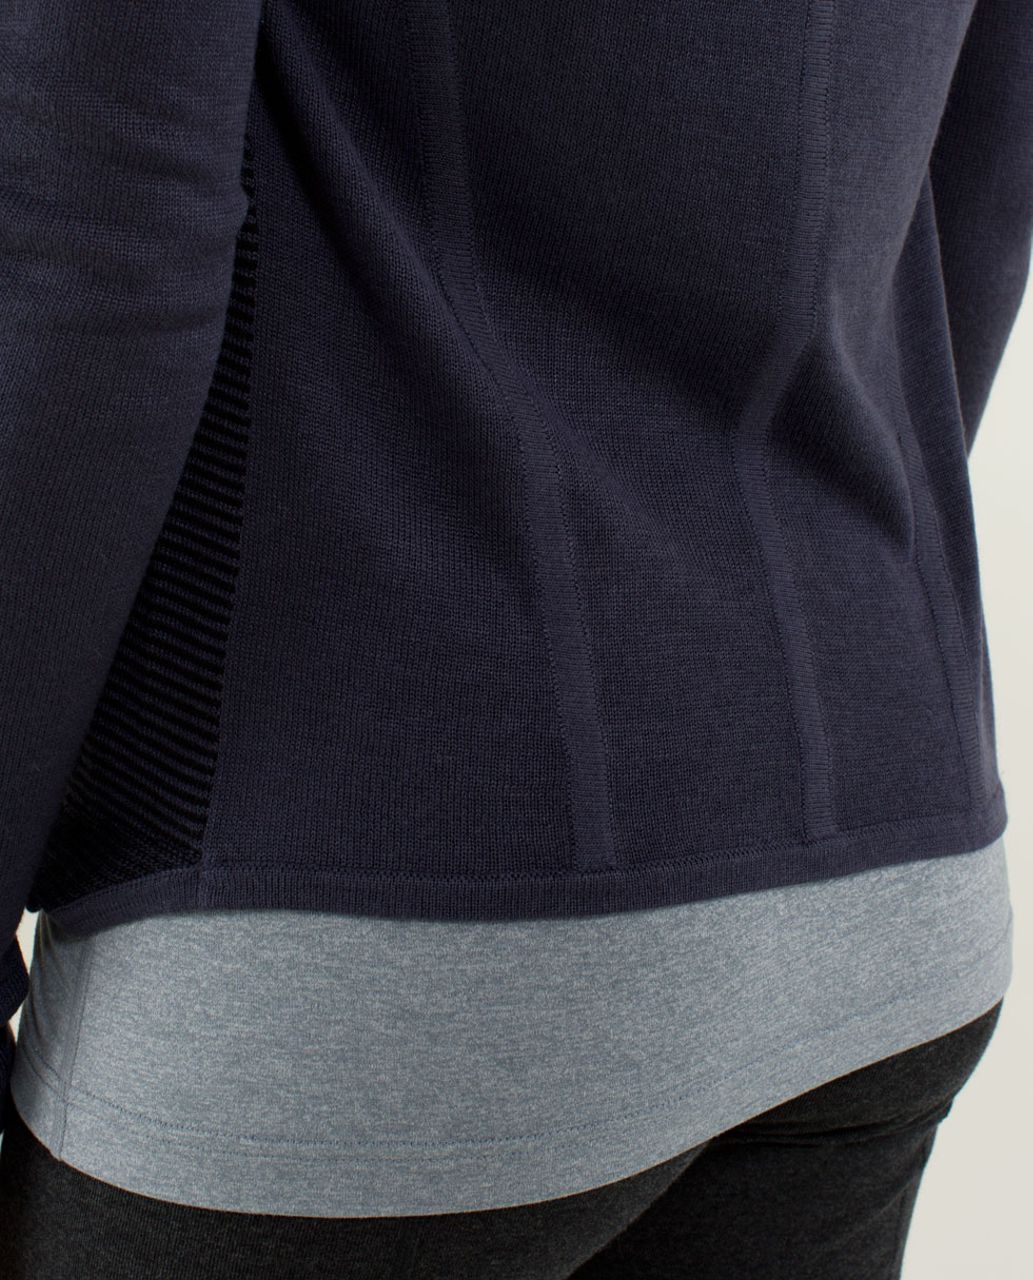 Lululemon Iconic Sweater Wrap - Cadet Blue / Black